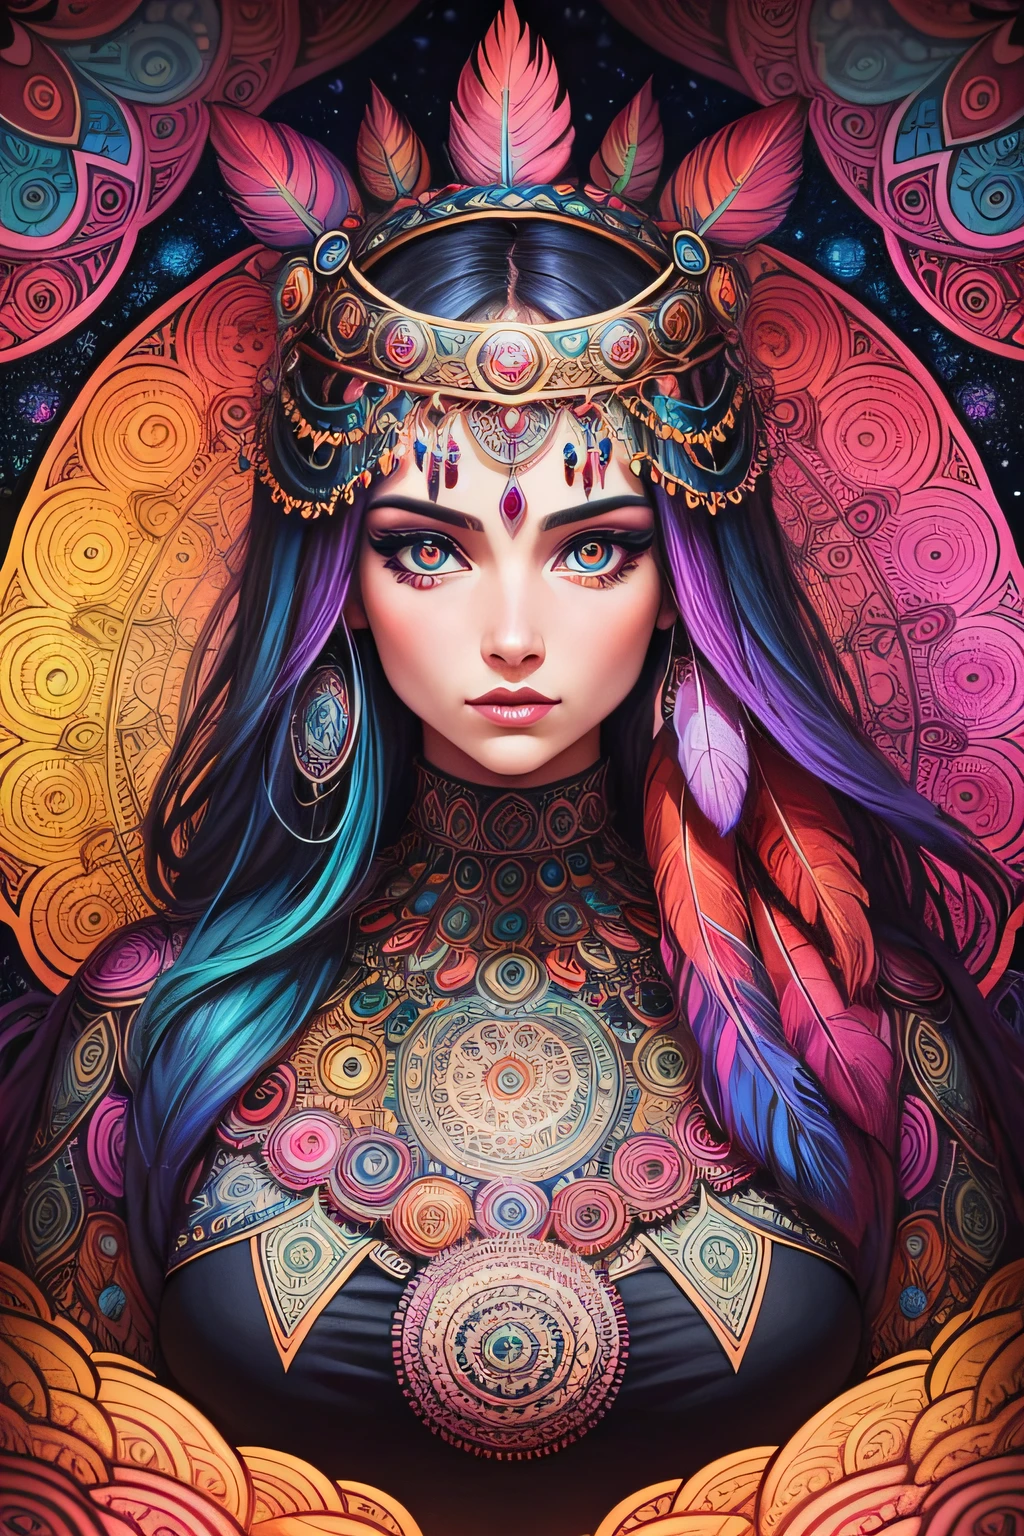 大量细致的女性迷幻曼陀罗，带有眼睛和羽毛，采用漫画艺术风格, 绚丽鲜艳的色彩和非常结构化的细节